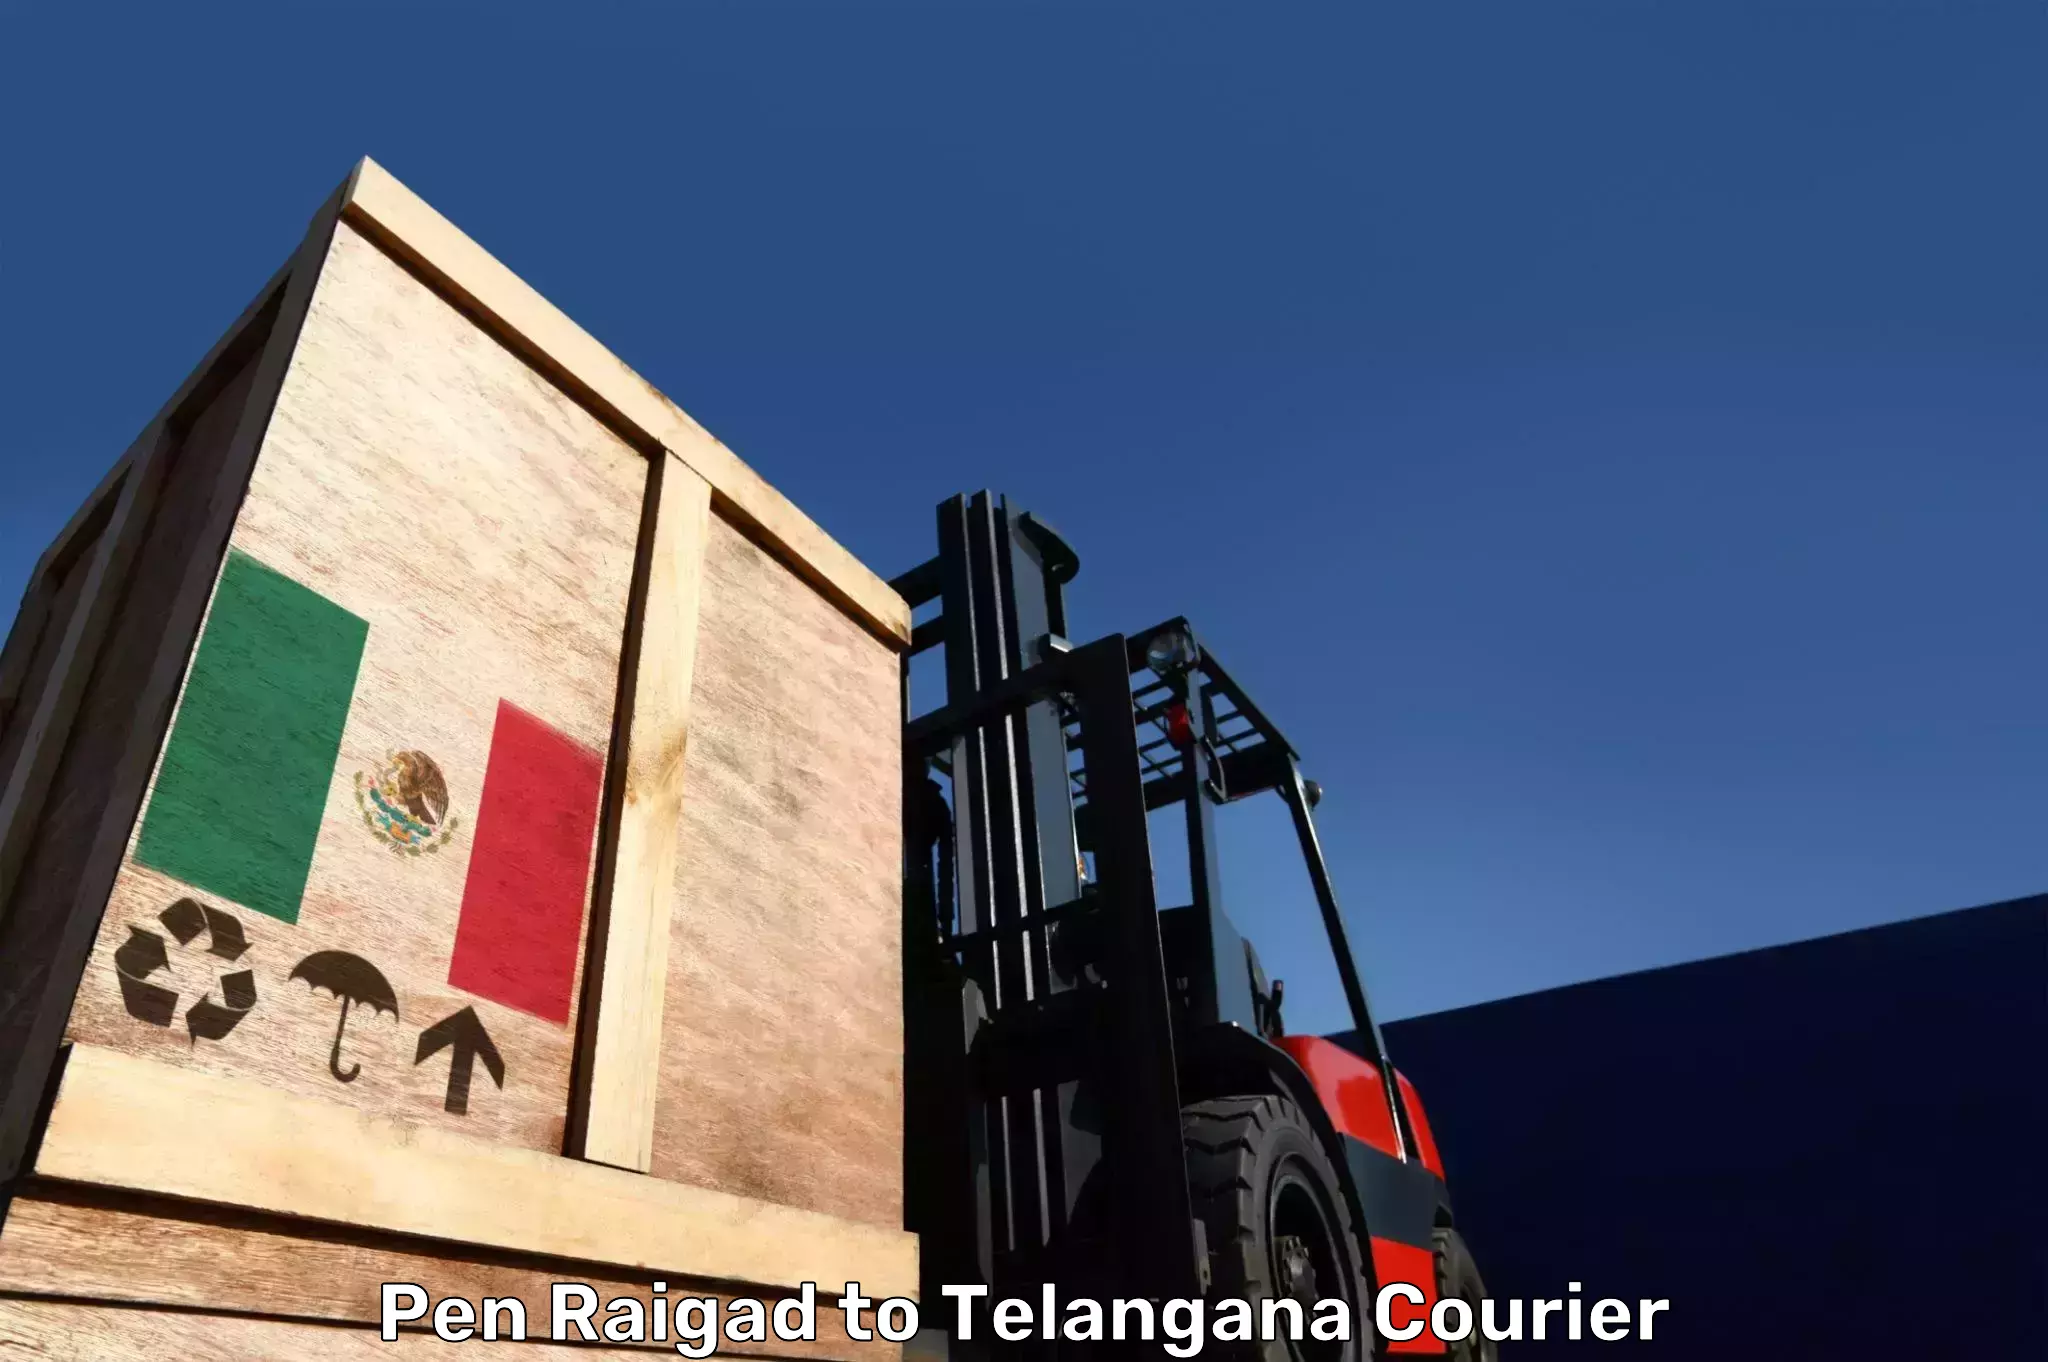 Baggage transport scheduler Pen Raigad to Telangana